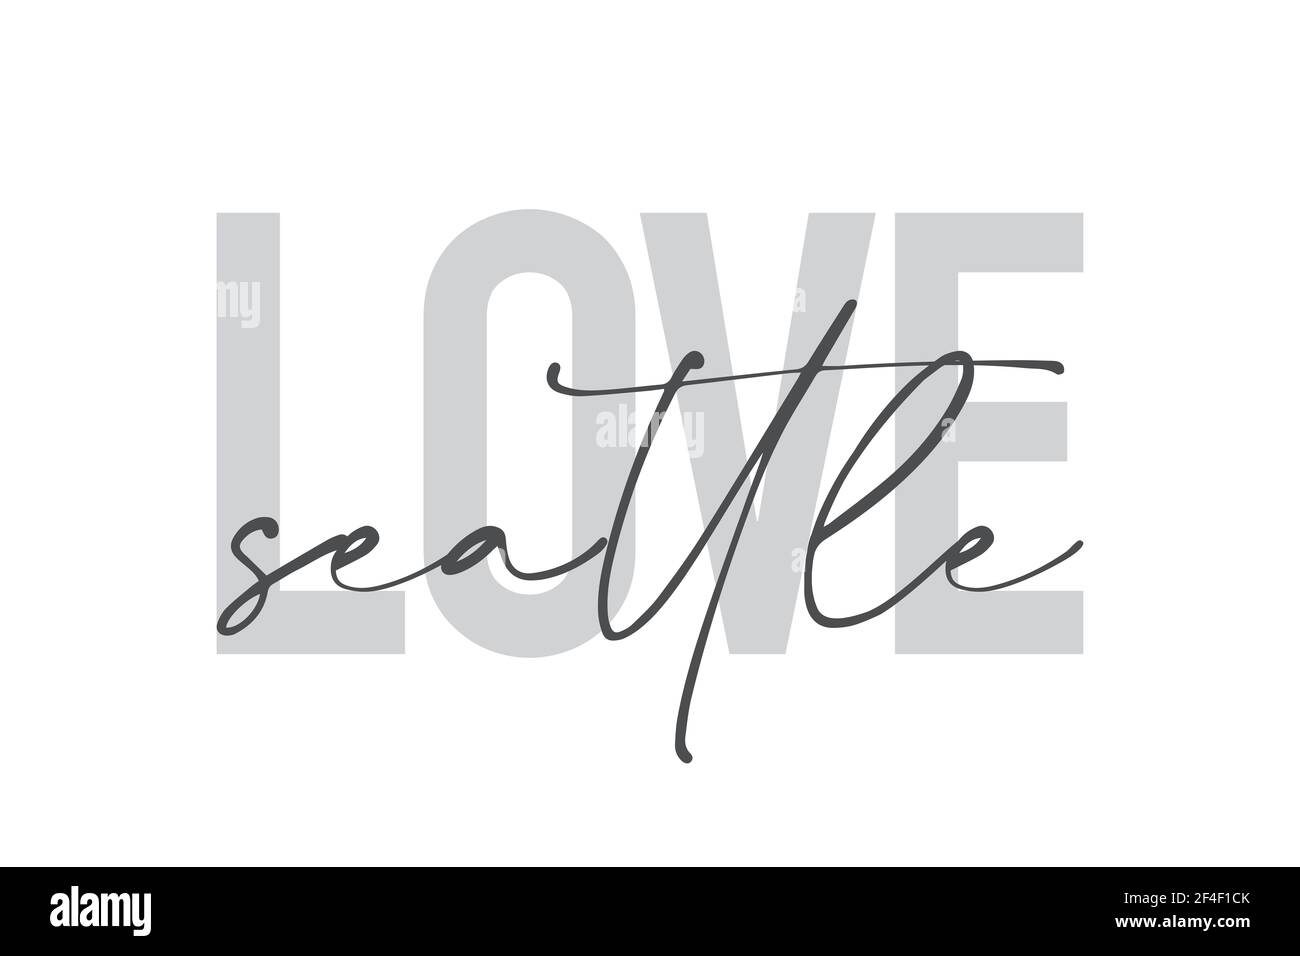 Design grafico moderno, urbano e semplice di un detto 'Love Seattle' in colori grigi. Tipografia trendy, fredda, manoscritta Foto Stock